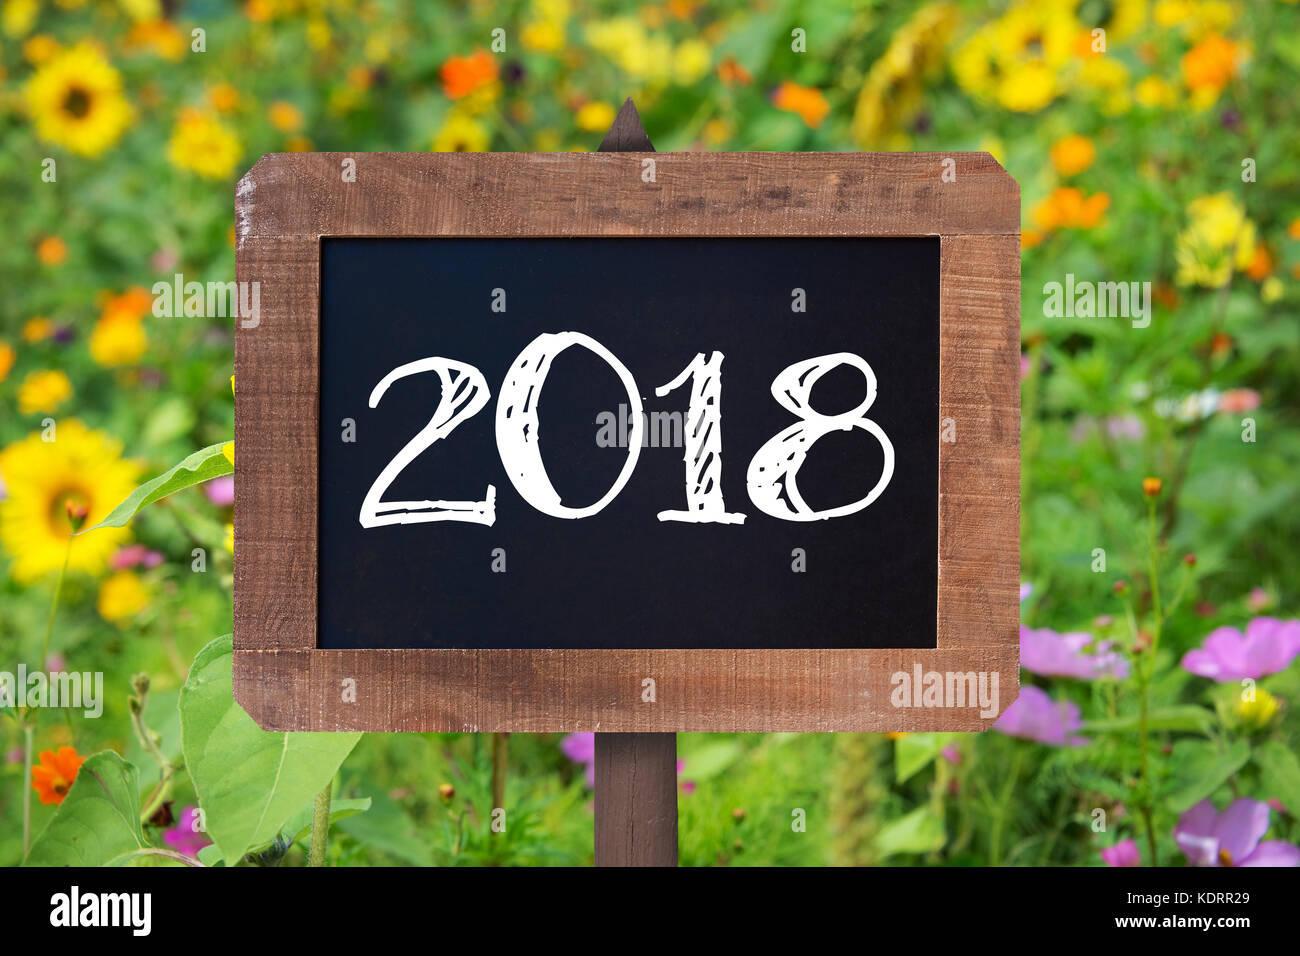 2018 scritto su di un cartello in legno, girasoli e fiori selvatici in background Foto Stock